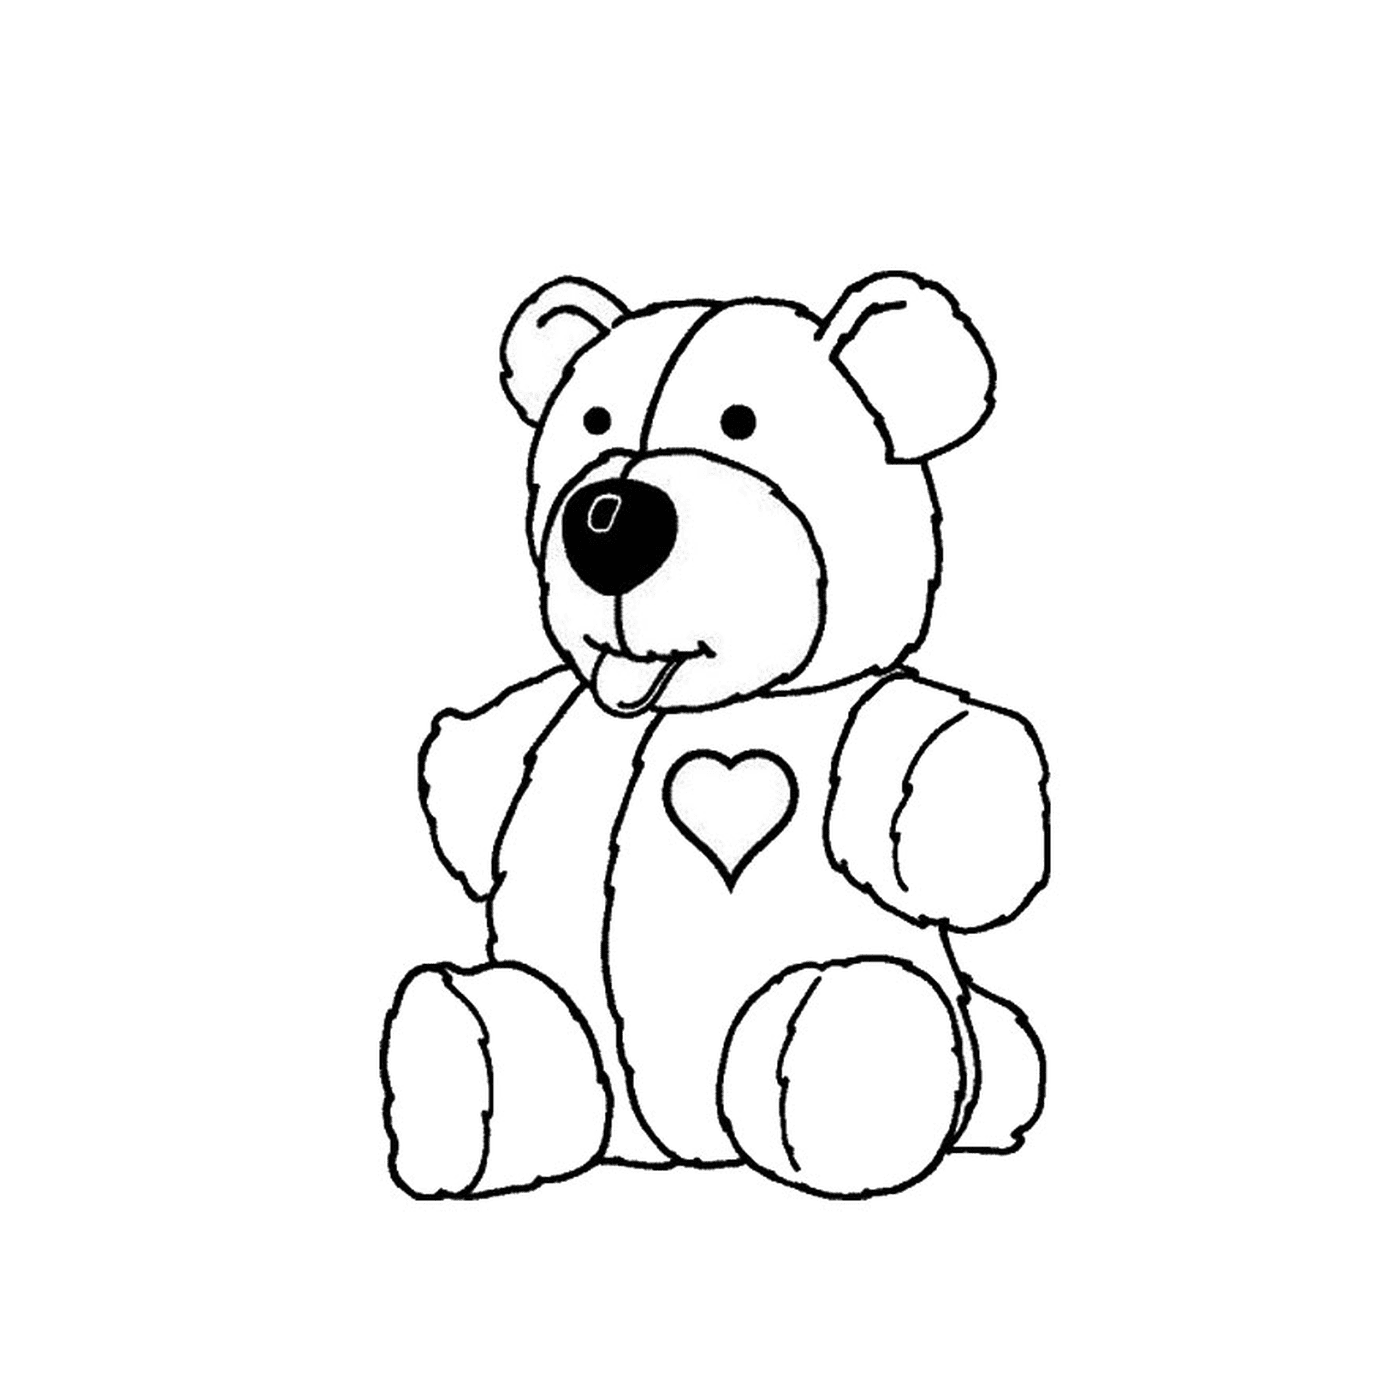  一只泰迪熊 